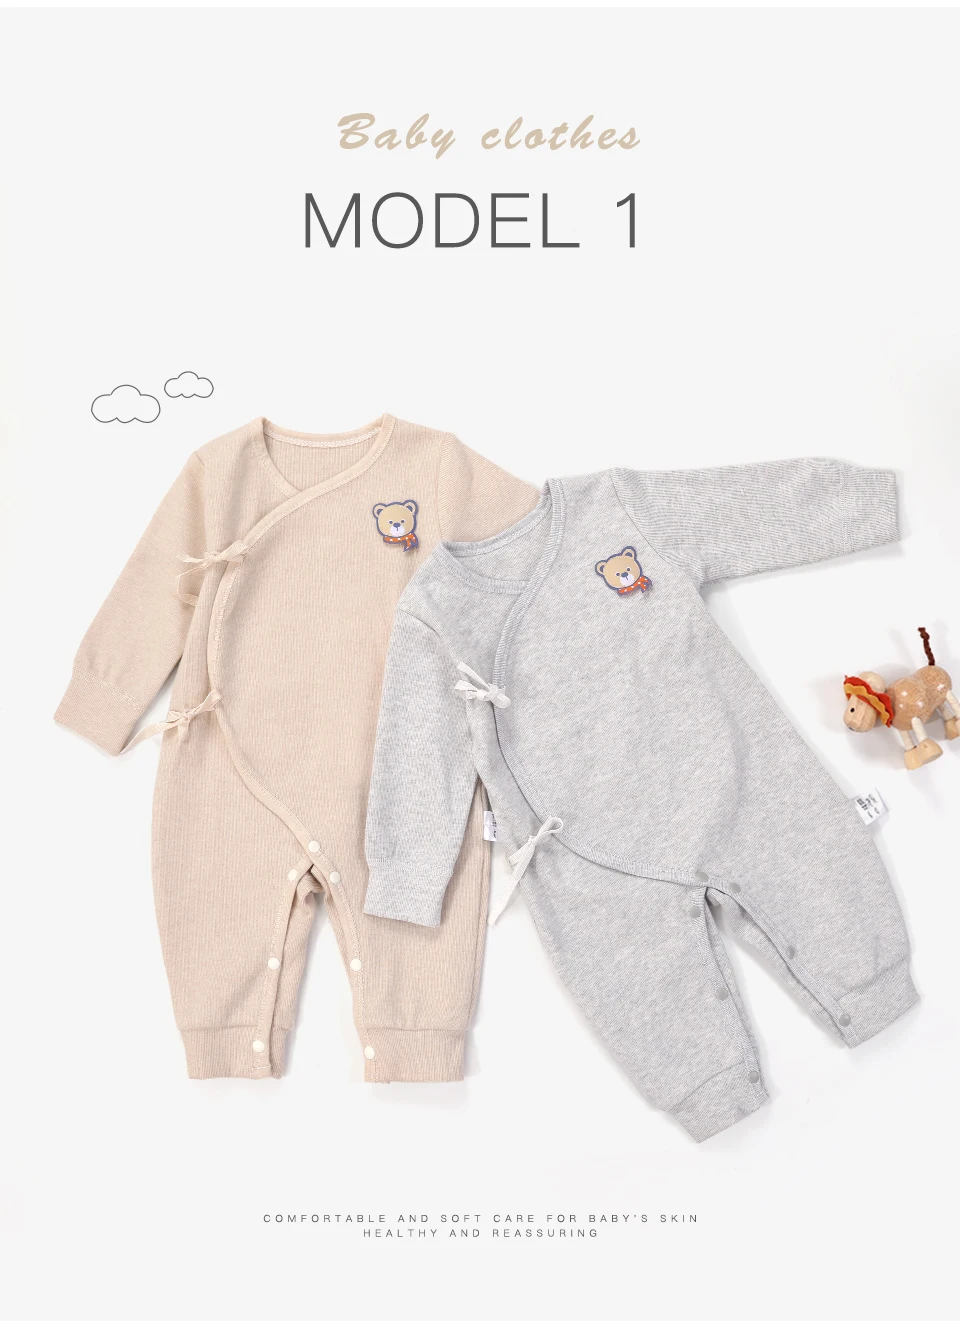 YATEMAO/одежда для малышей 0-12 месяцев; Одежда для новорожденных; комбинезоны с длинными рукавами для новорожденных мальчиков и девочек